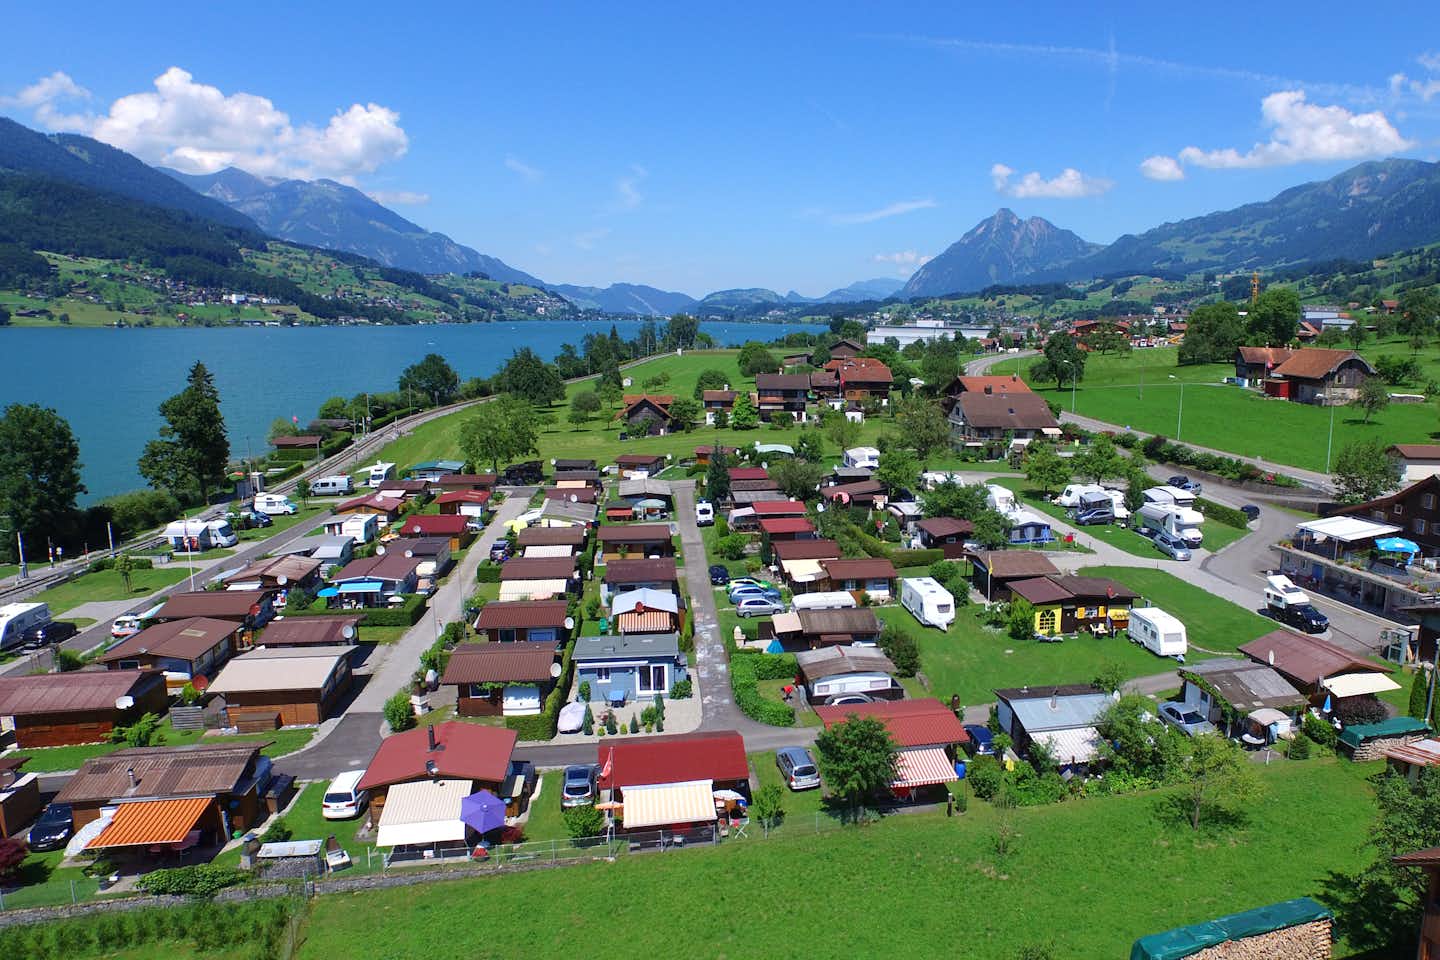 Camping Ewil - Luftaufnahme vom Campingplatz am Sarner See mit Blick auf die Alpen